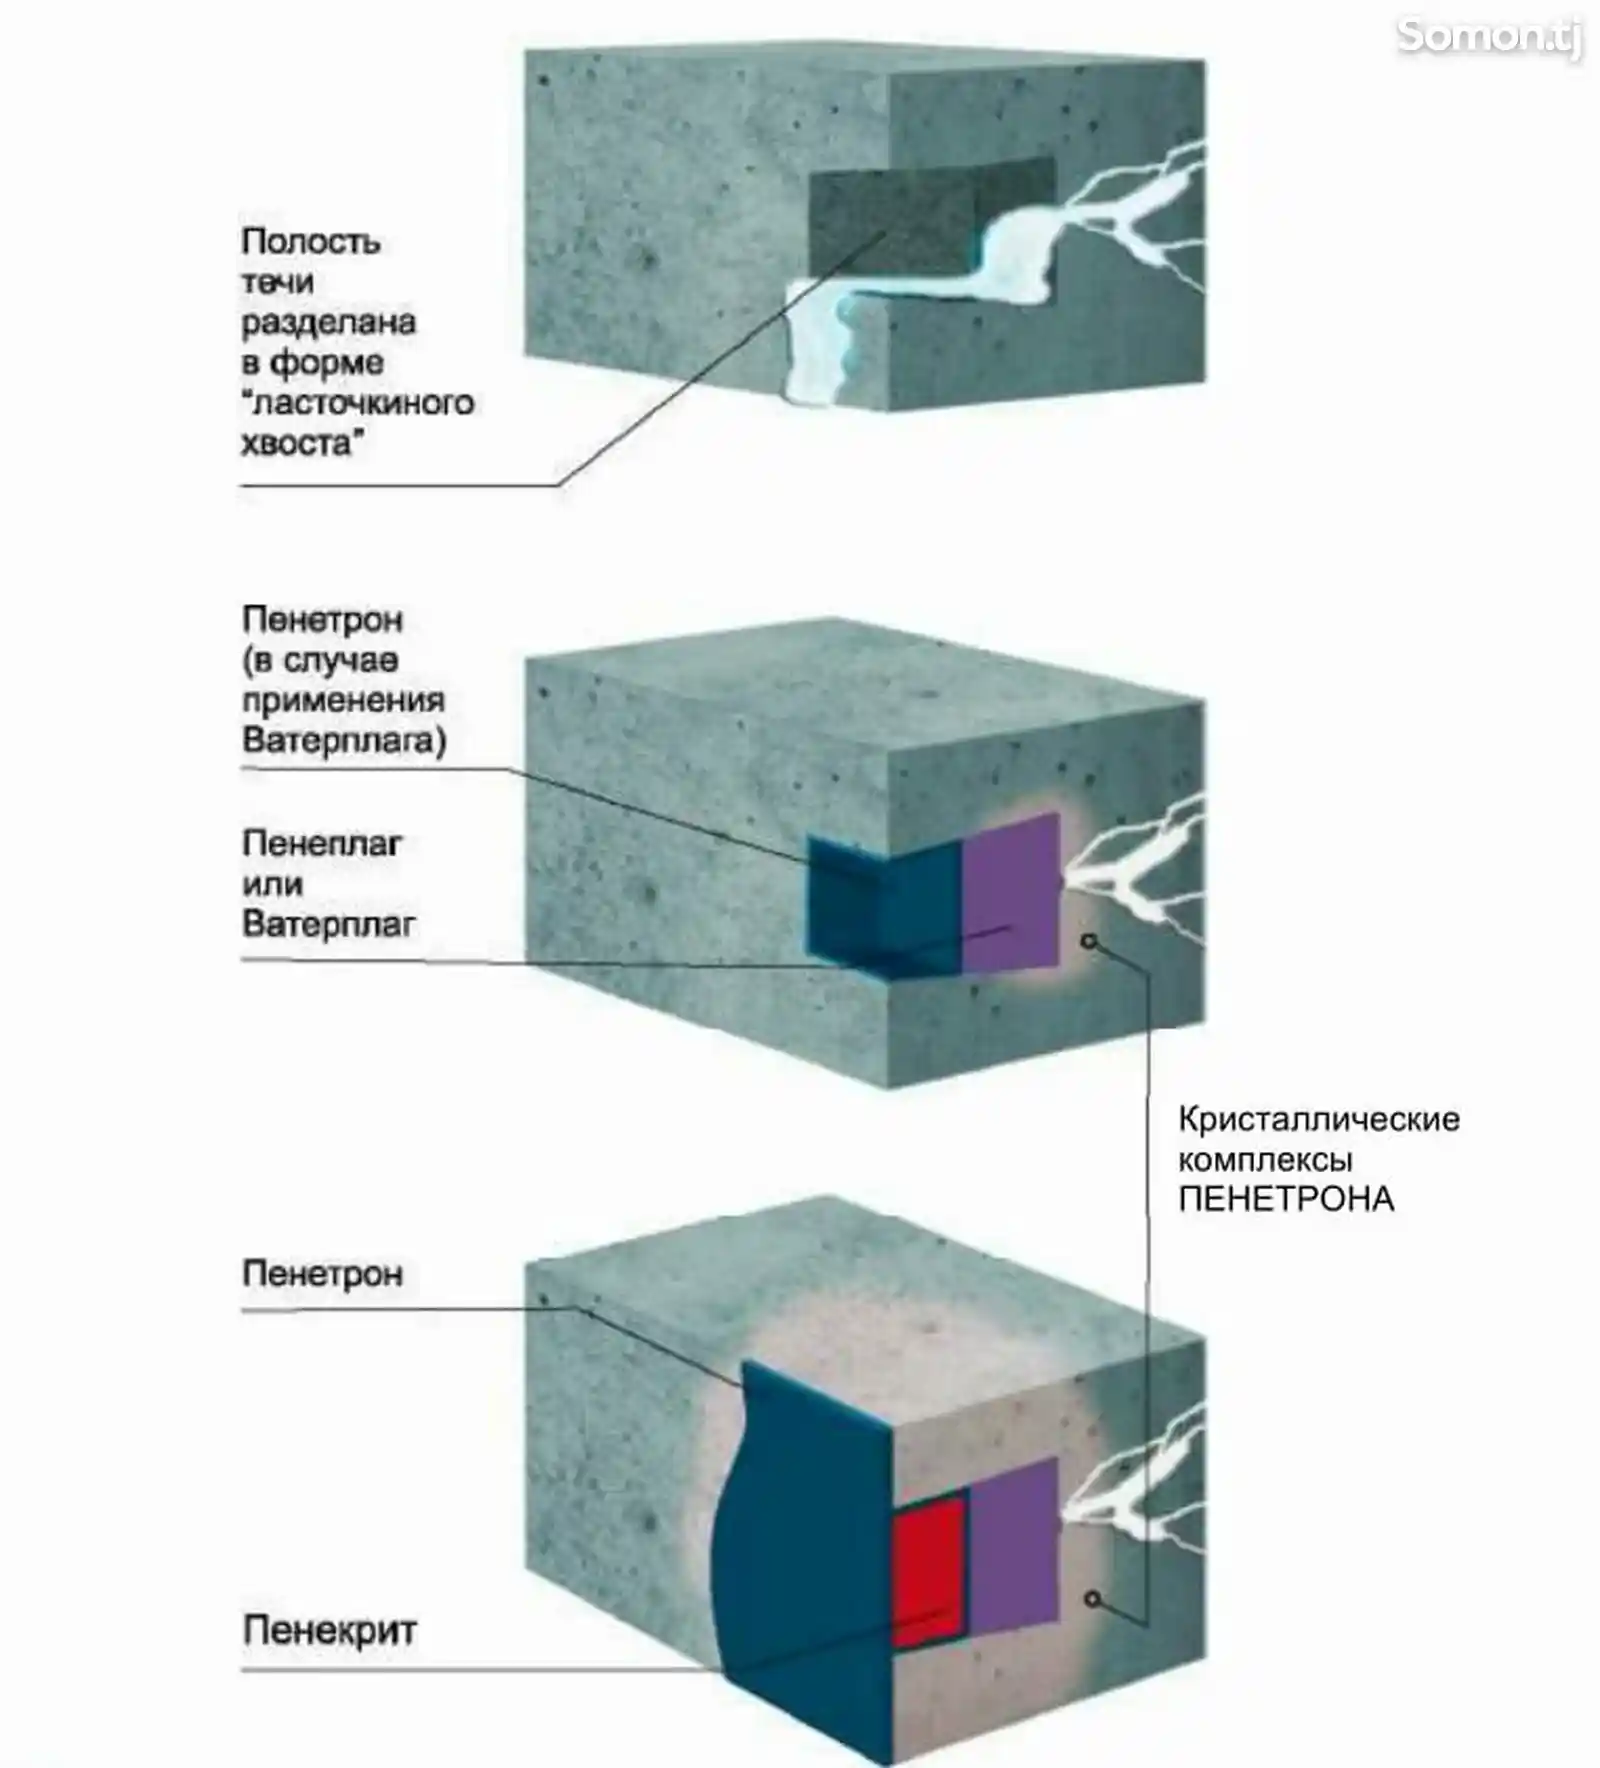 Гидропломба Ватерплаг и Пенеплаг для остановки напорных течей в бетоне-6